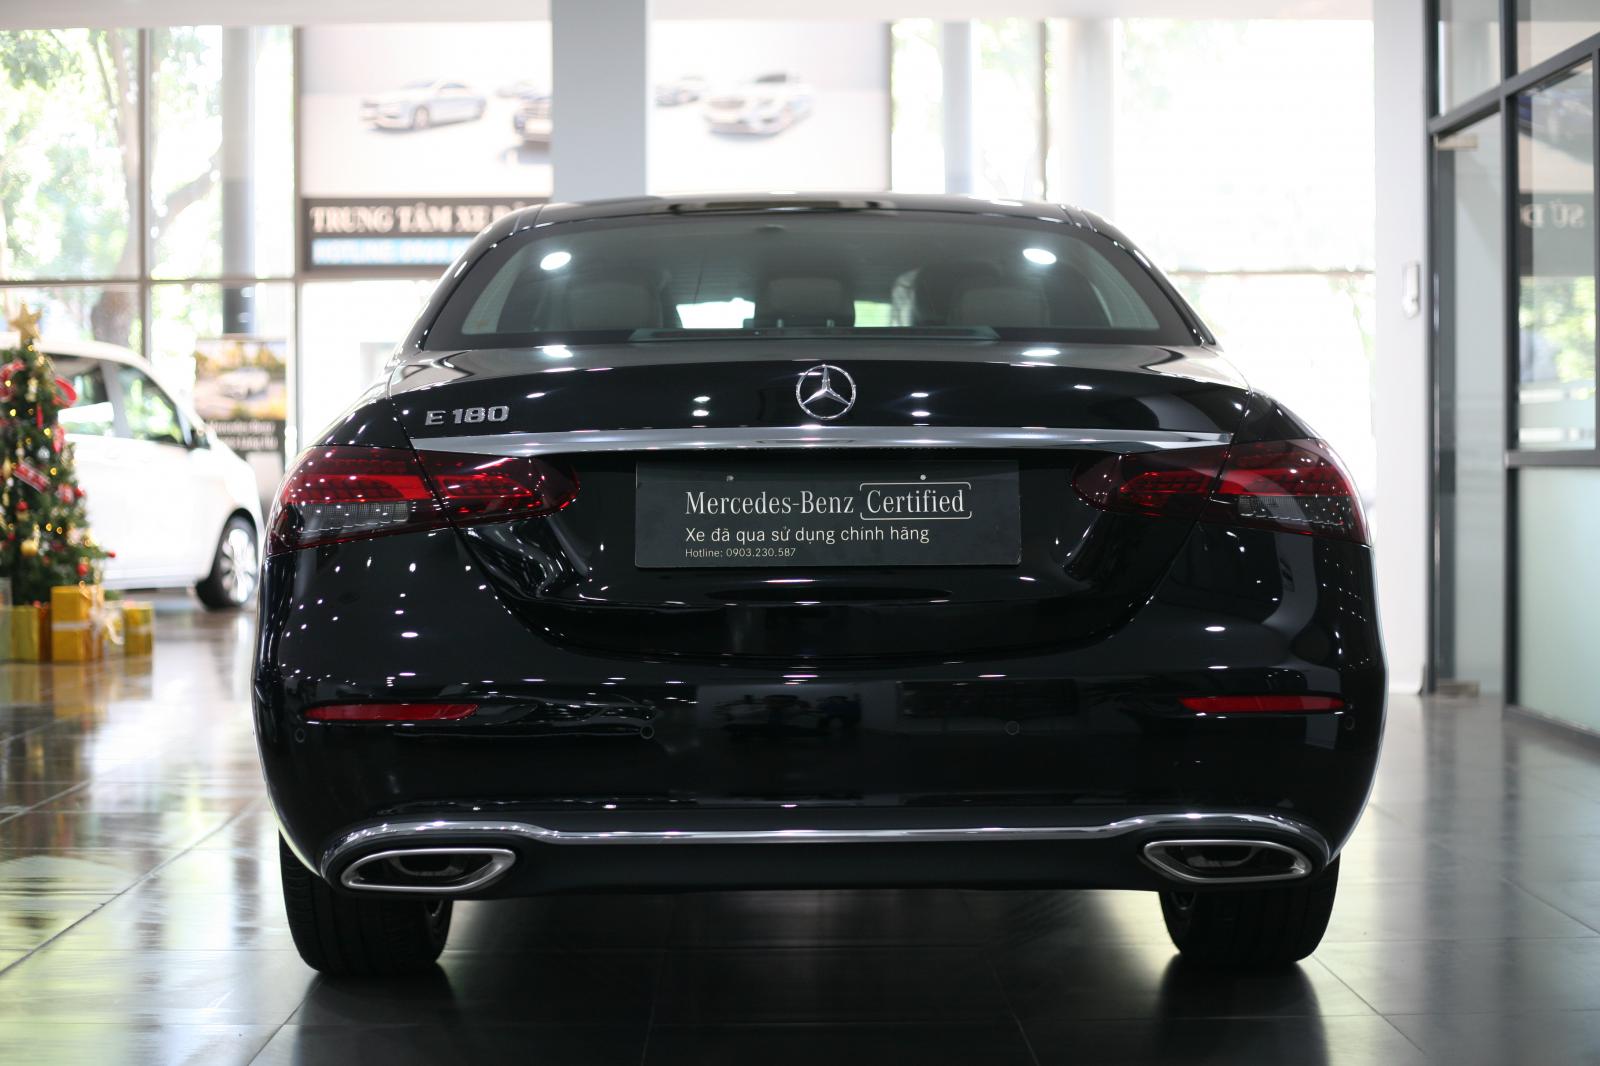 Mercedes Haxaco bán Xe Lướt Chính Hãng E180 Sx 2021 Lăn bánh 600KM bảo hành 3 năm giá 1,95 tỷ.